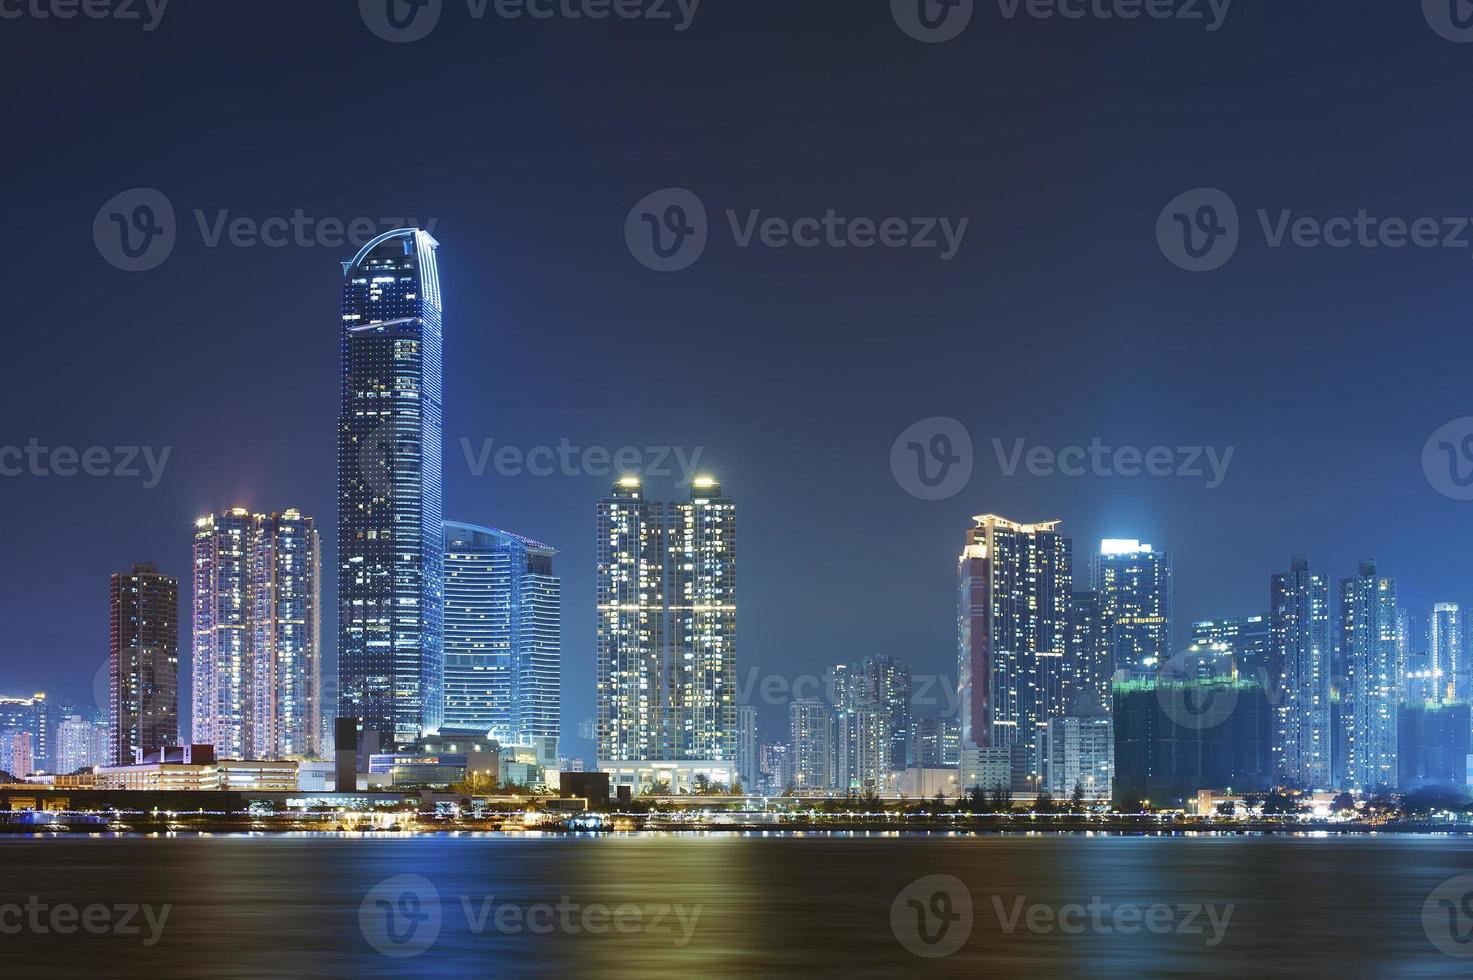 Hong Kong Stadtbild foto